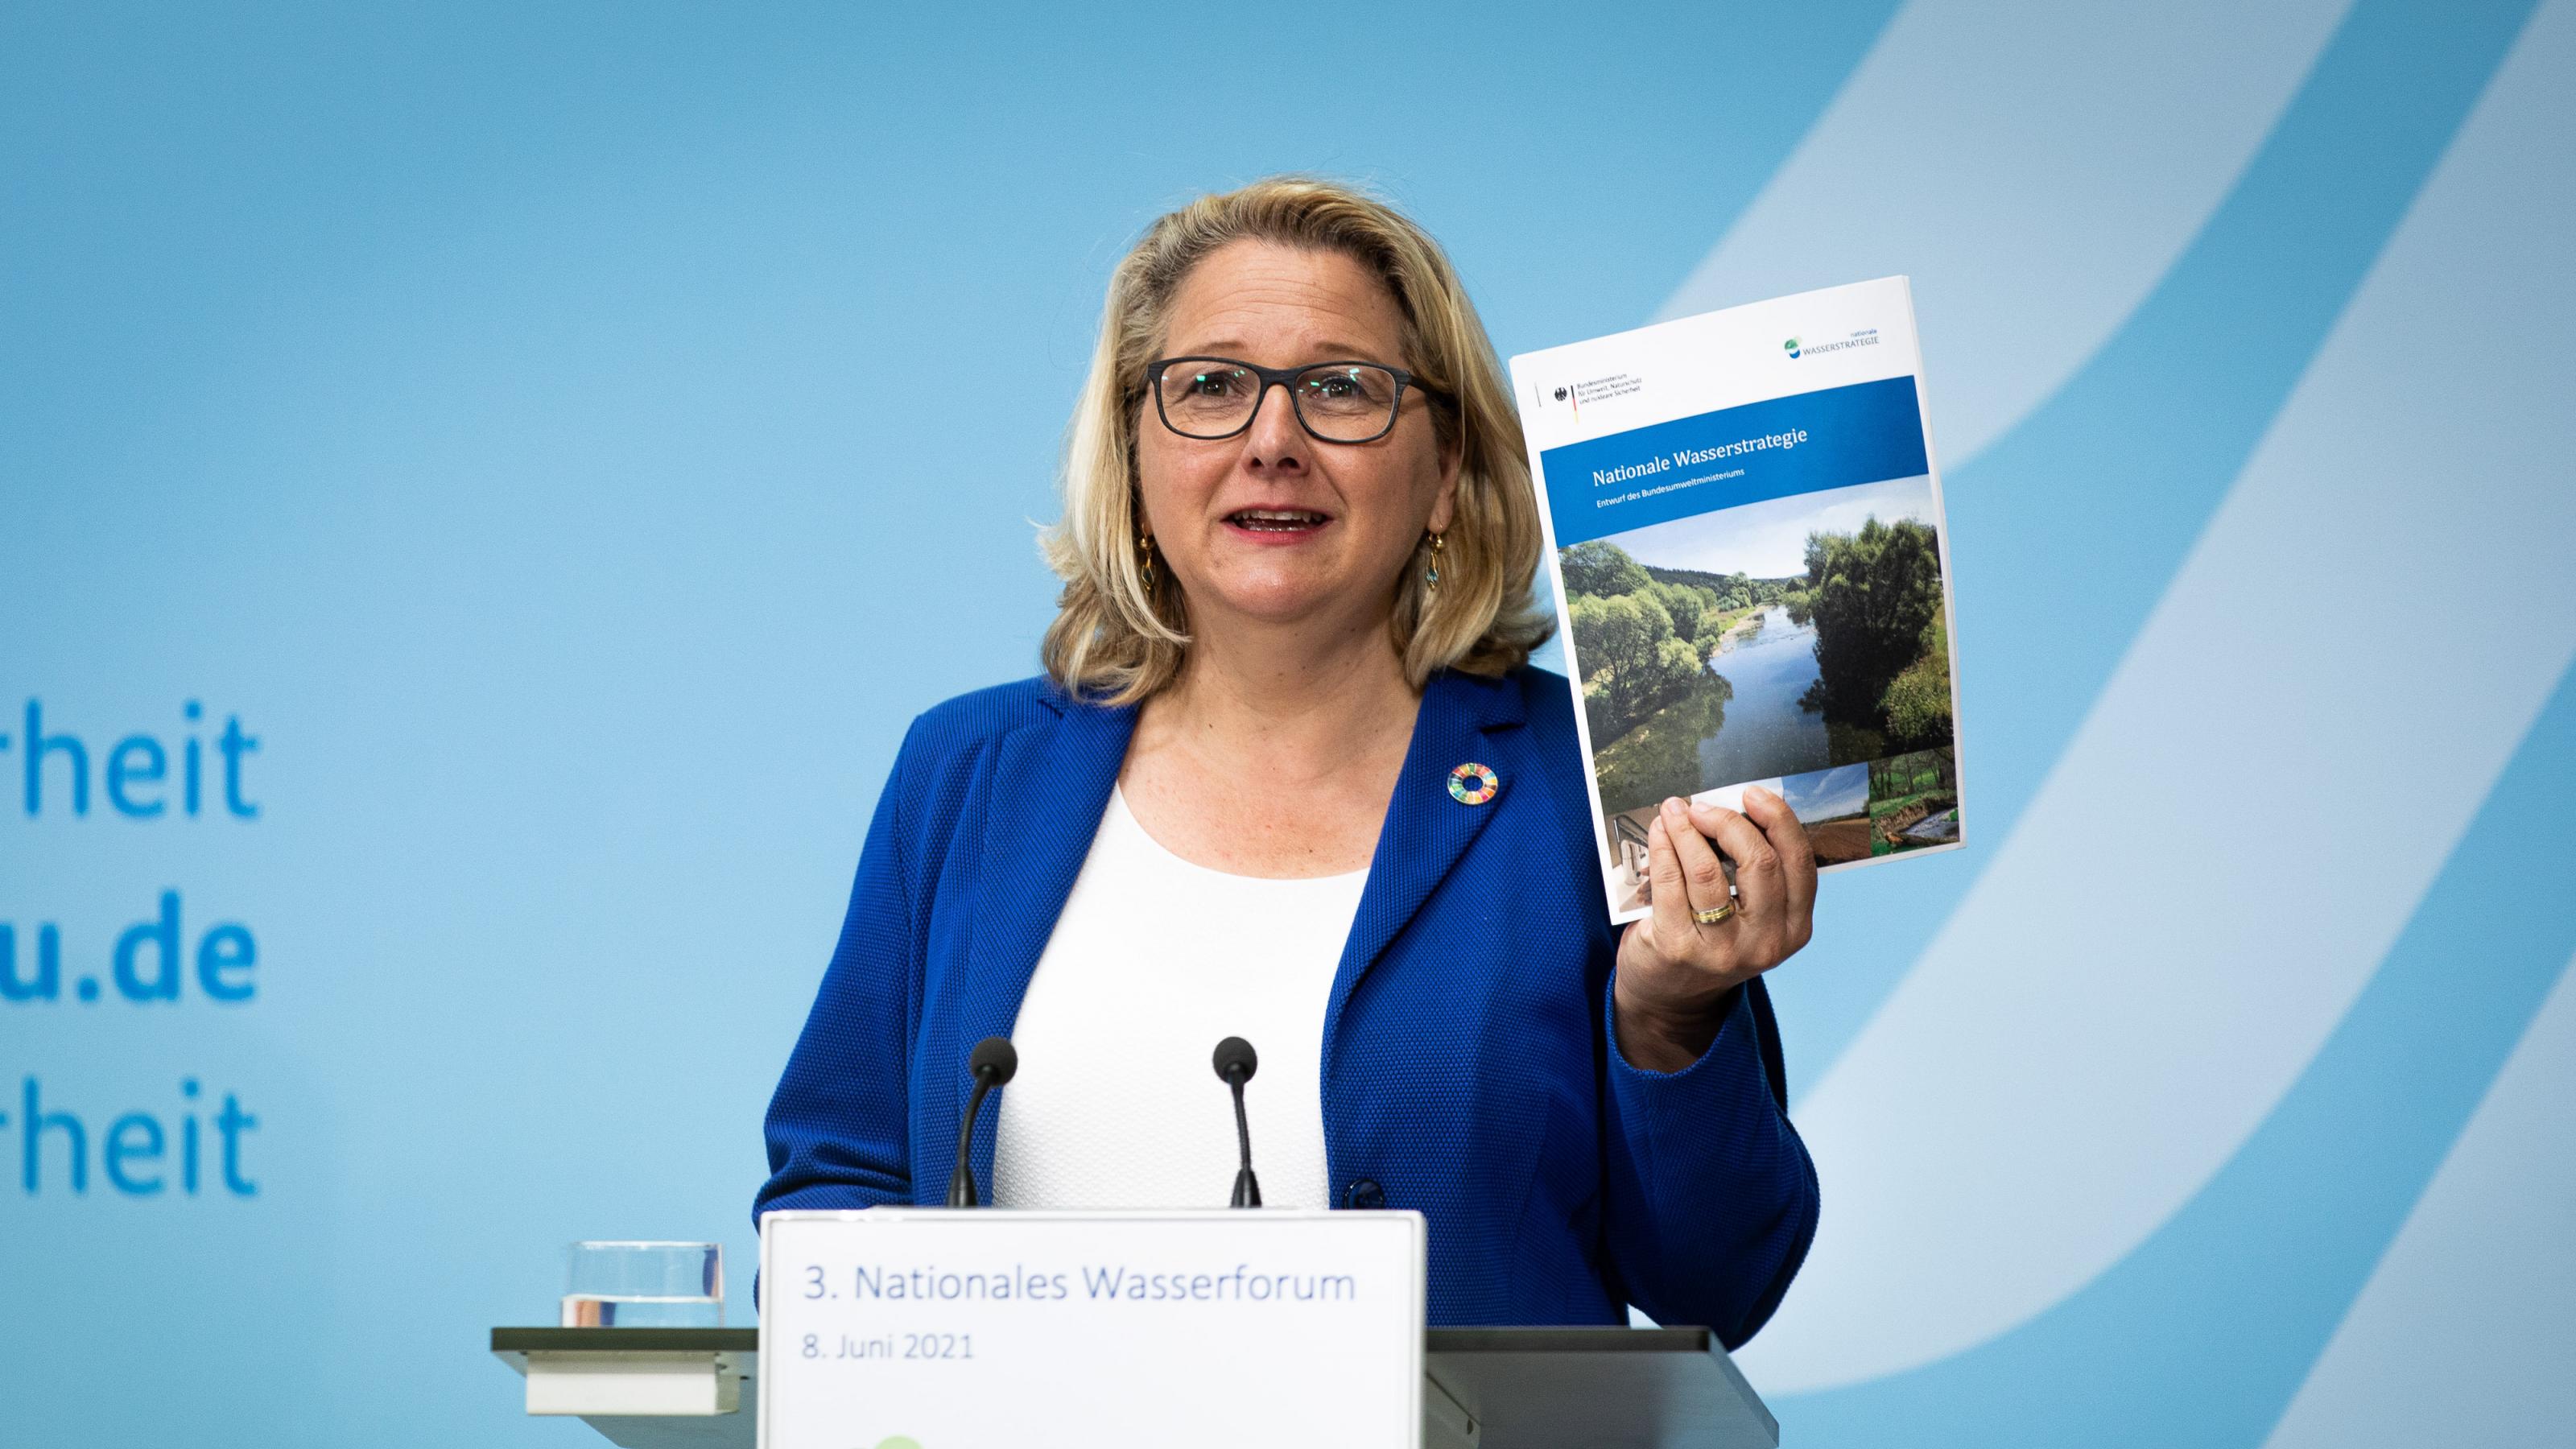 Bundesumweltministerin Svenja Schulze stellte eine erste „Nationale Wasserstrategie “am 8. Juni 2021 anlässlich der Eröffnung des 3. Nationale Wasserforums in Berlin vor. Das Bild zeigt die Ministerin am Rednerpult. Sie hält die Publikation mit dem Titel „Nationale Wasserstrategie“ hoch, so dass das Publikum sie gut sehen kann.